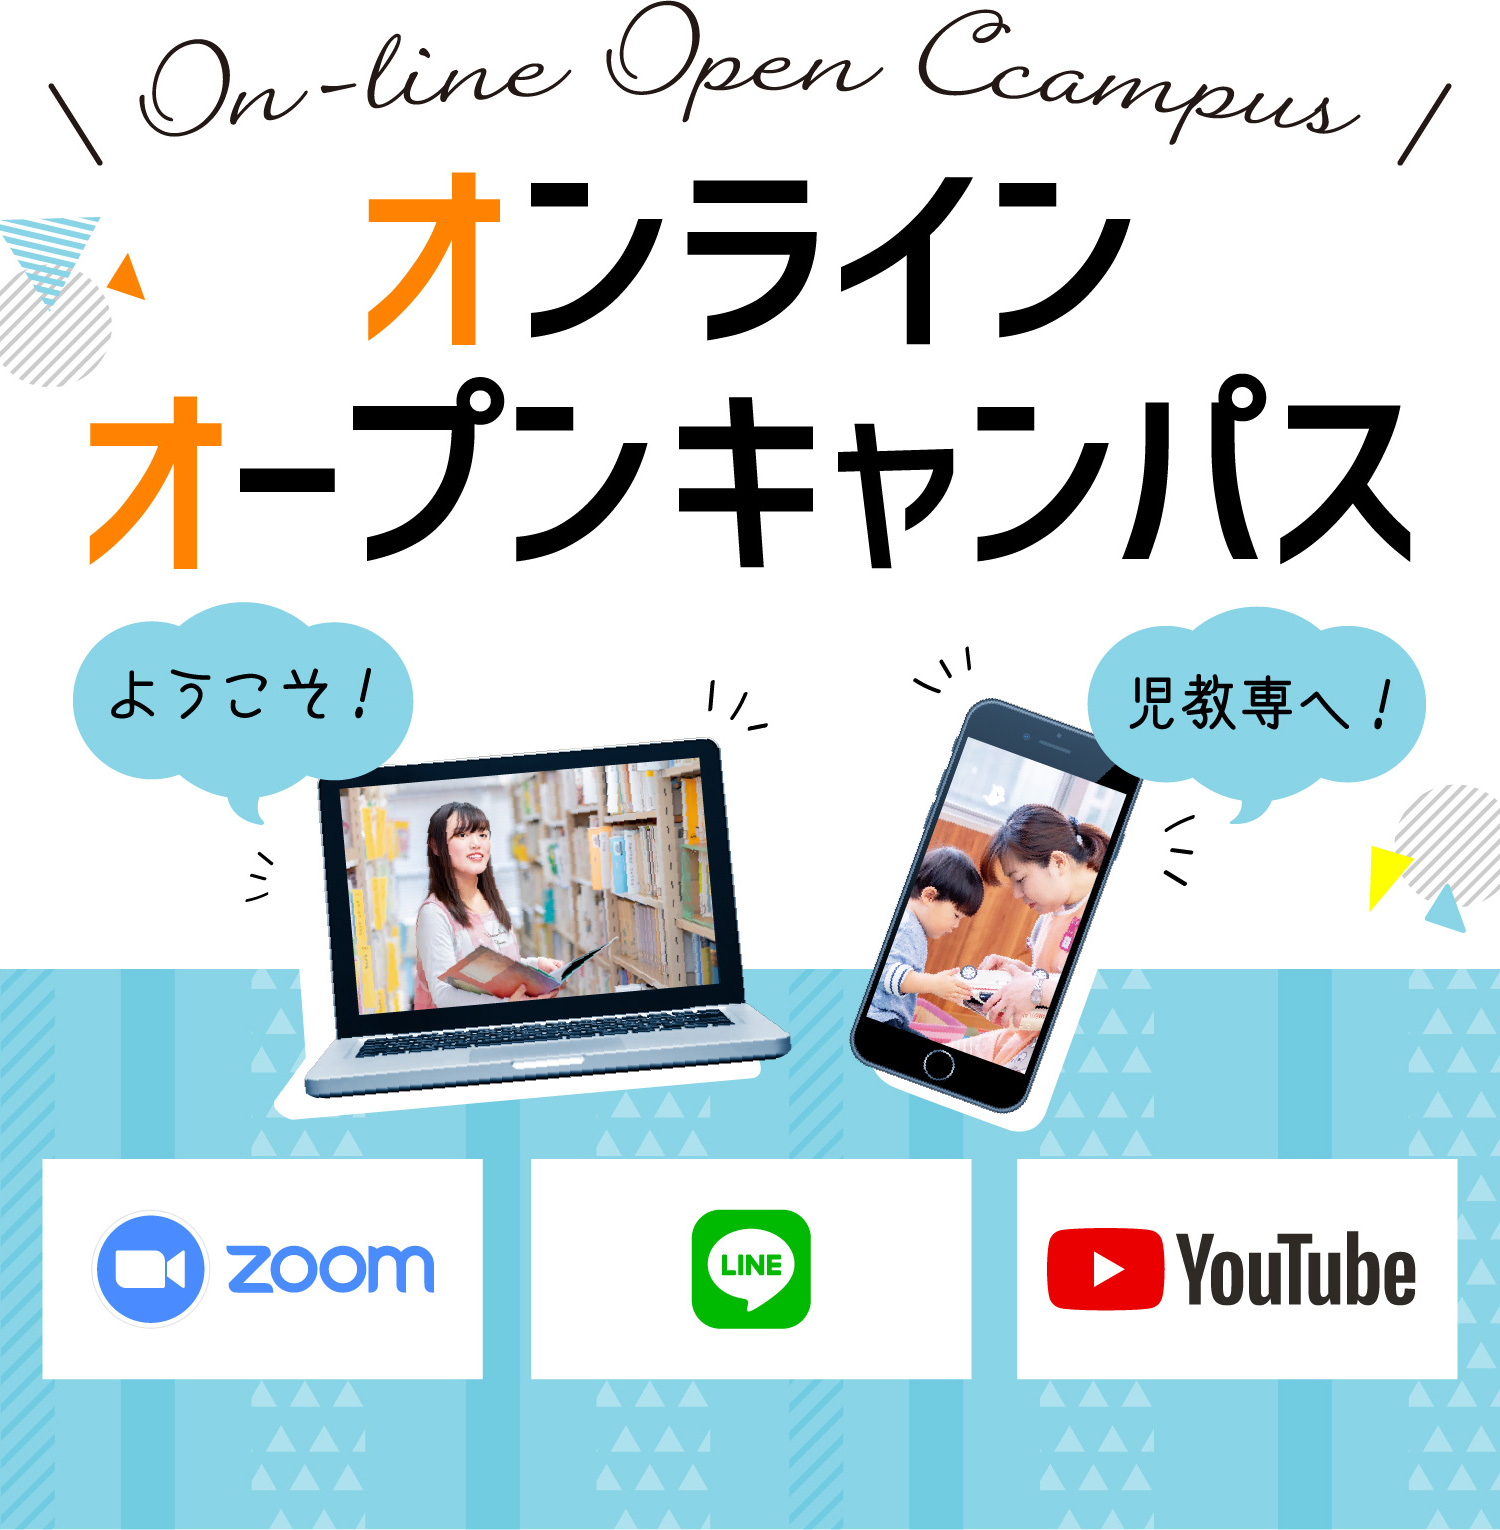 On-line Open Ccampus オンライン オープンキャンパス